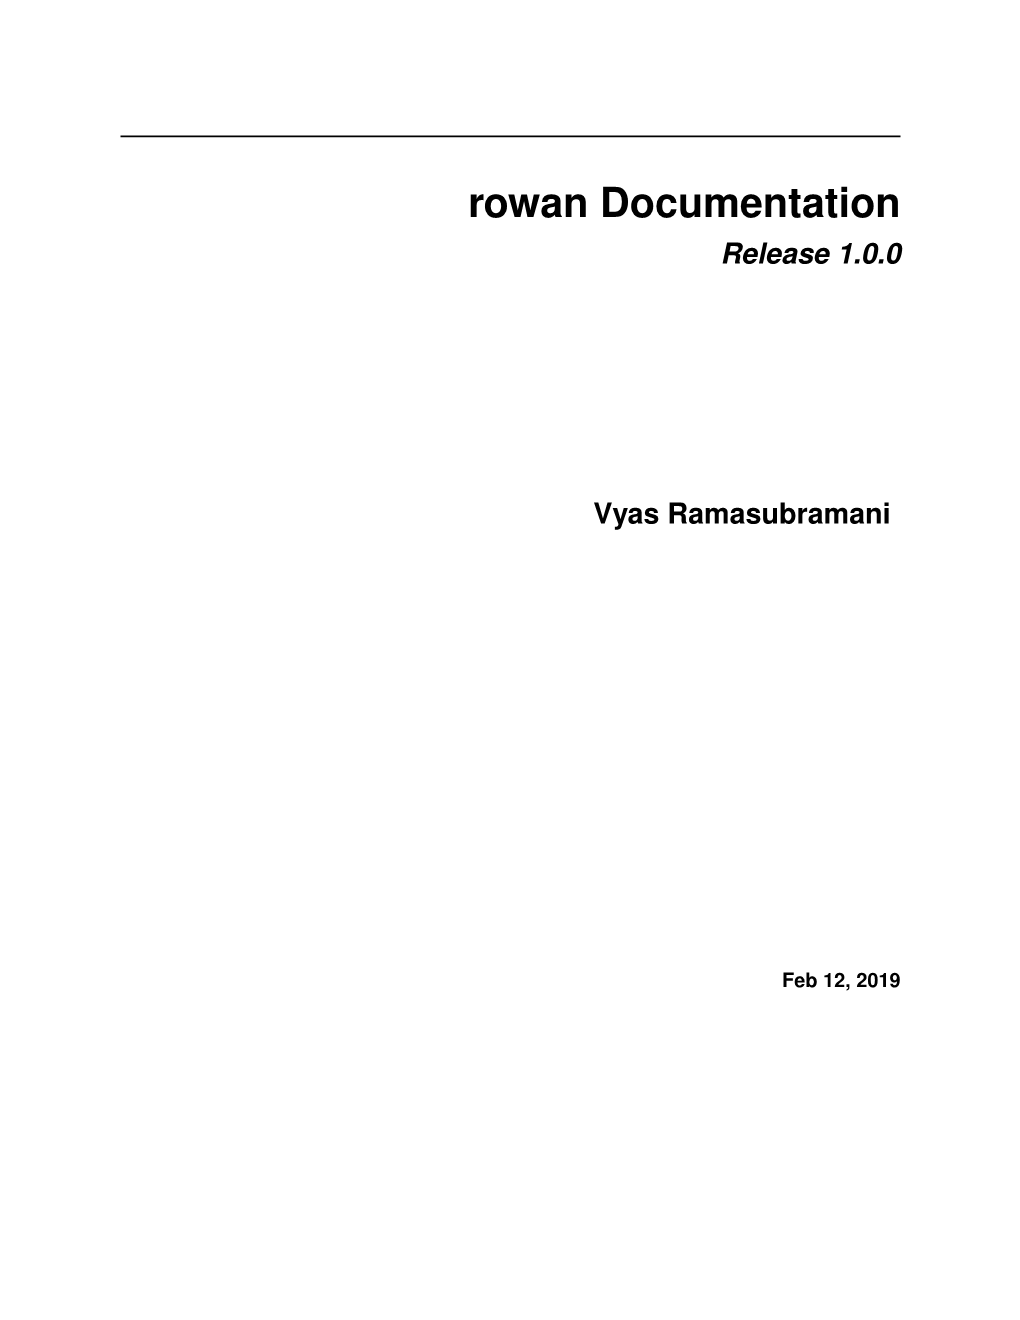 Rowan Documentation Release 1.0.0